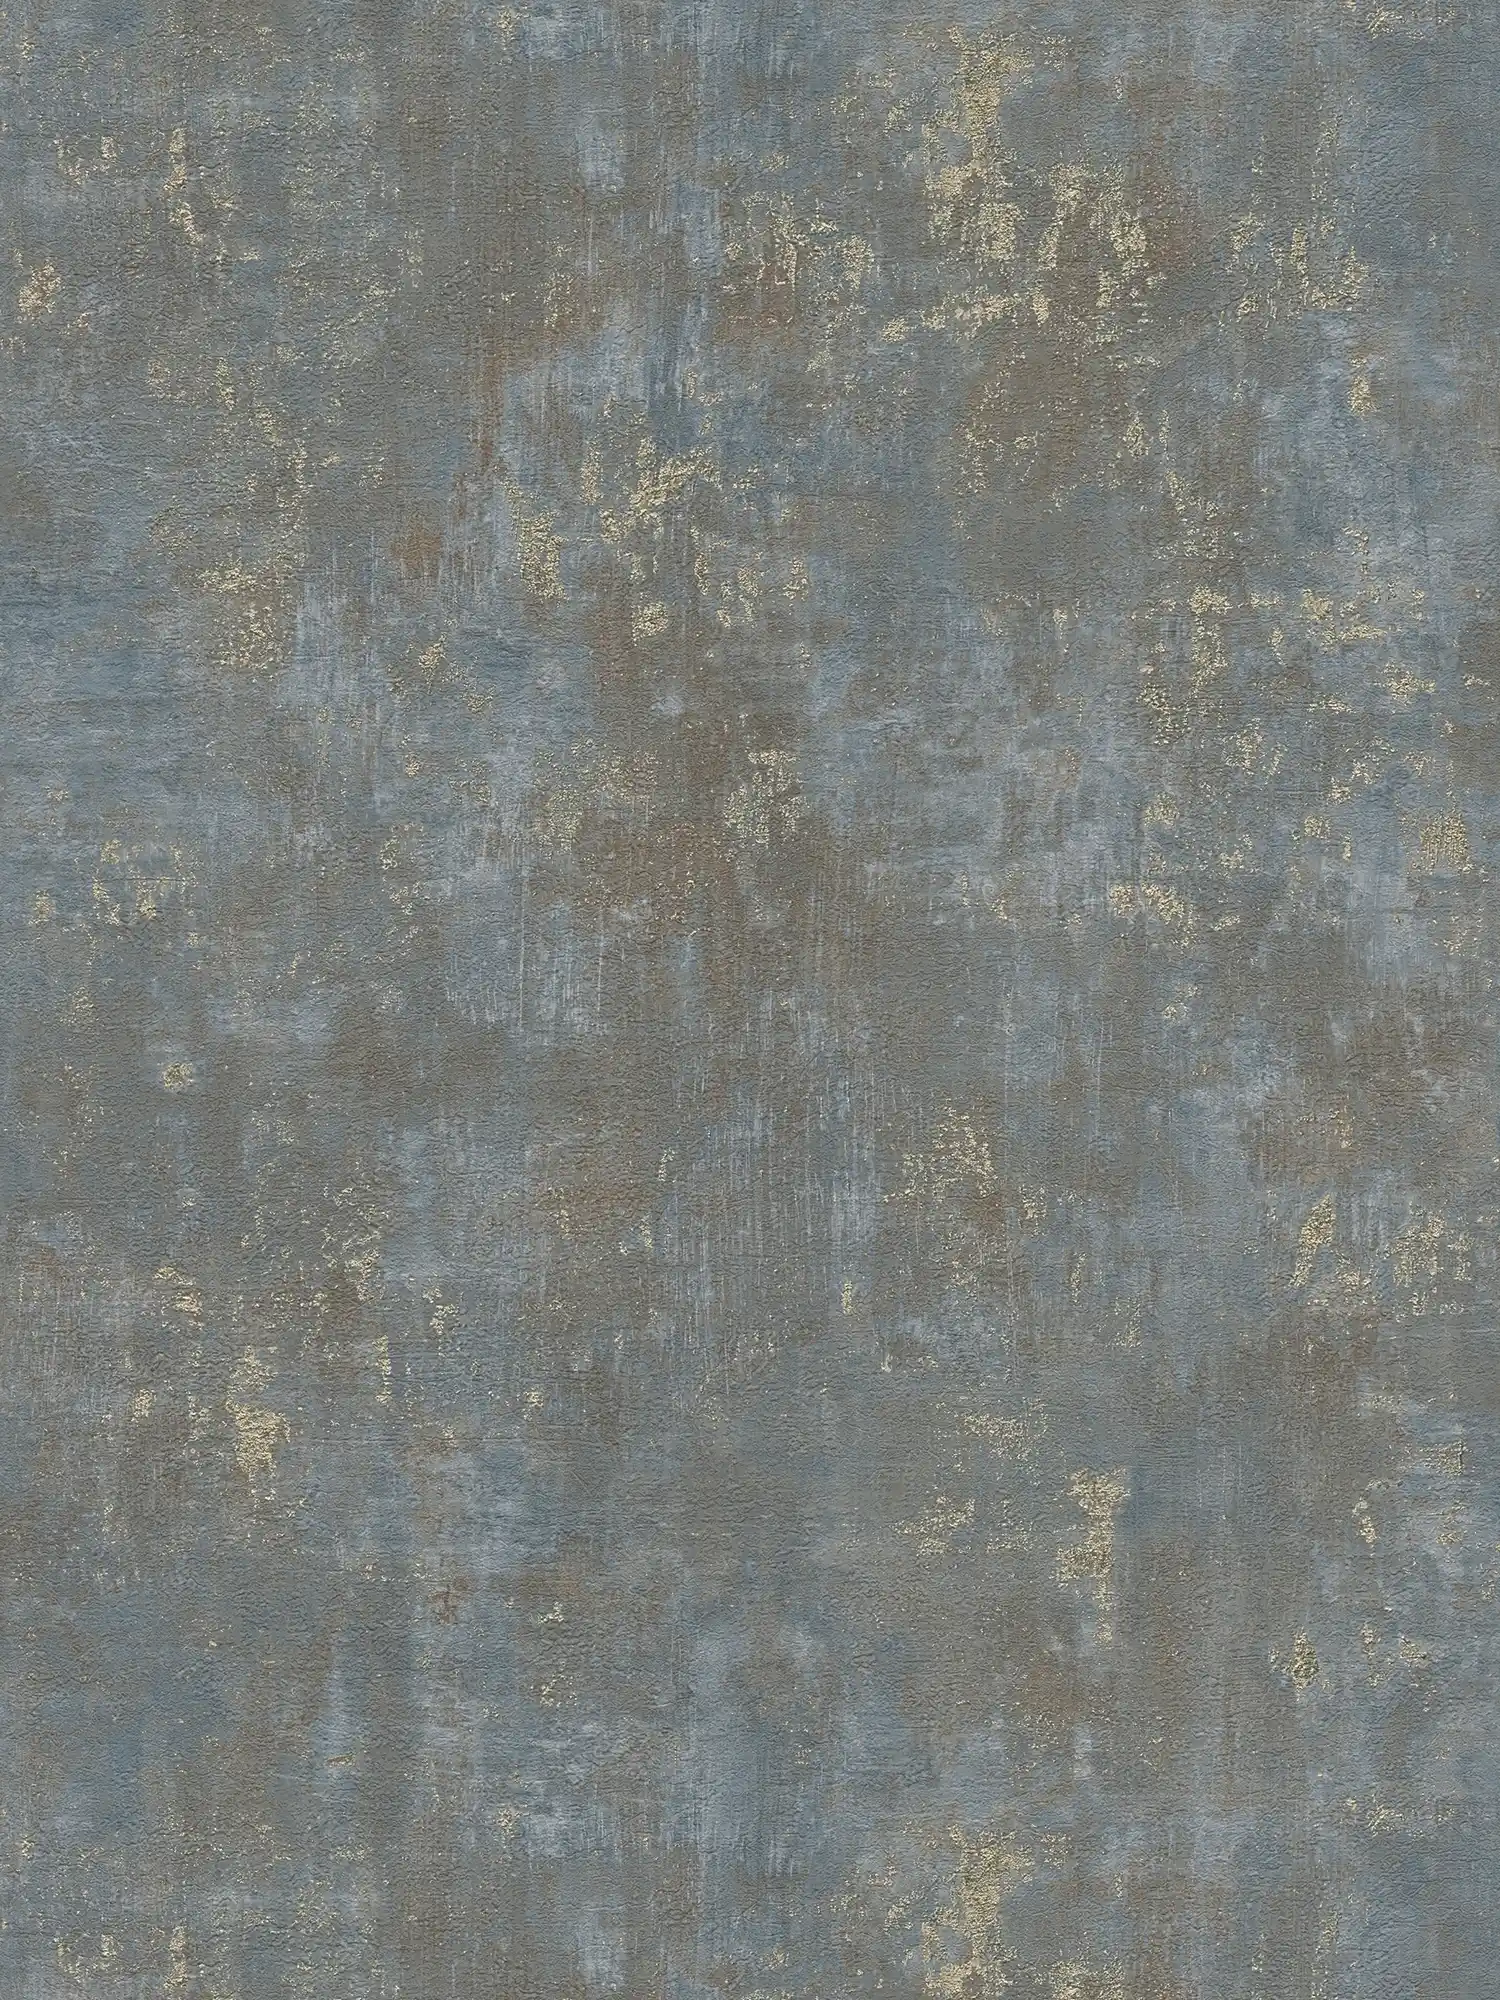 Papel pintado oxidado con toques metálicos (marrón, azul, dorado)
